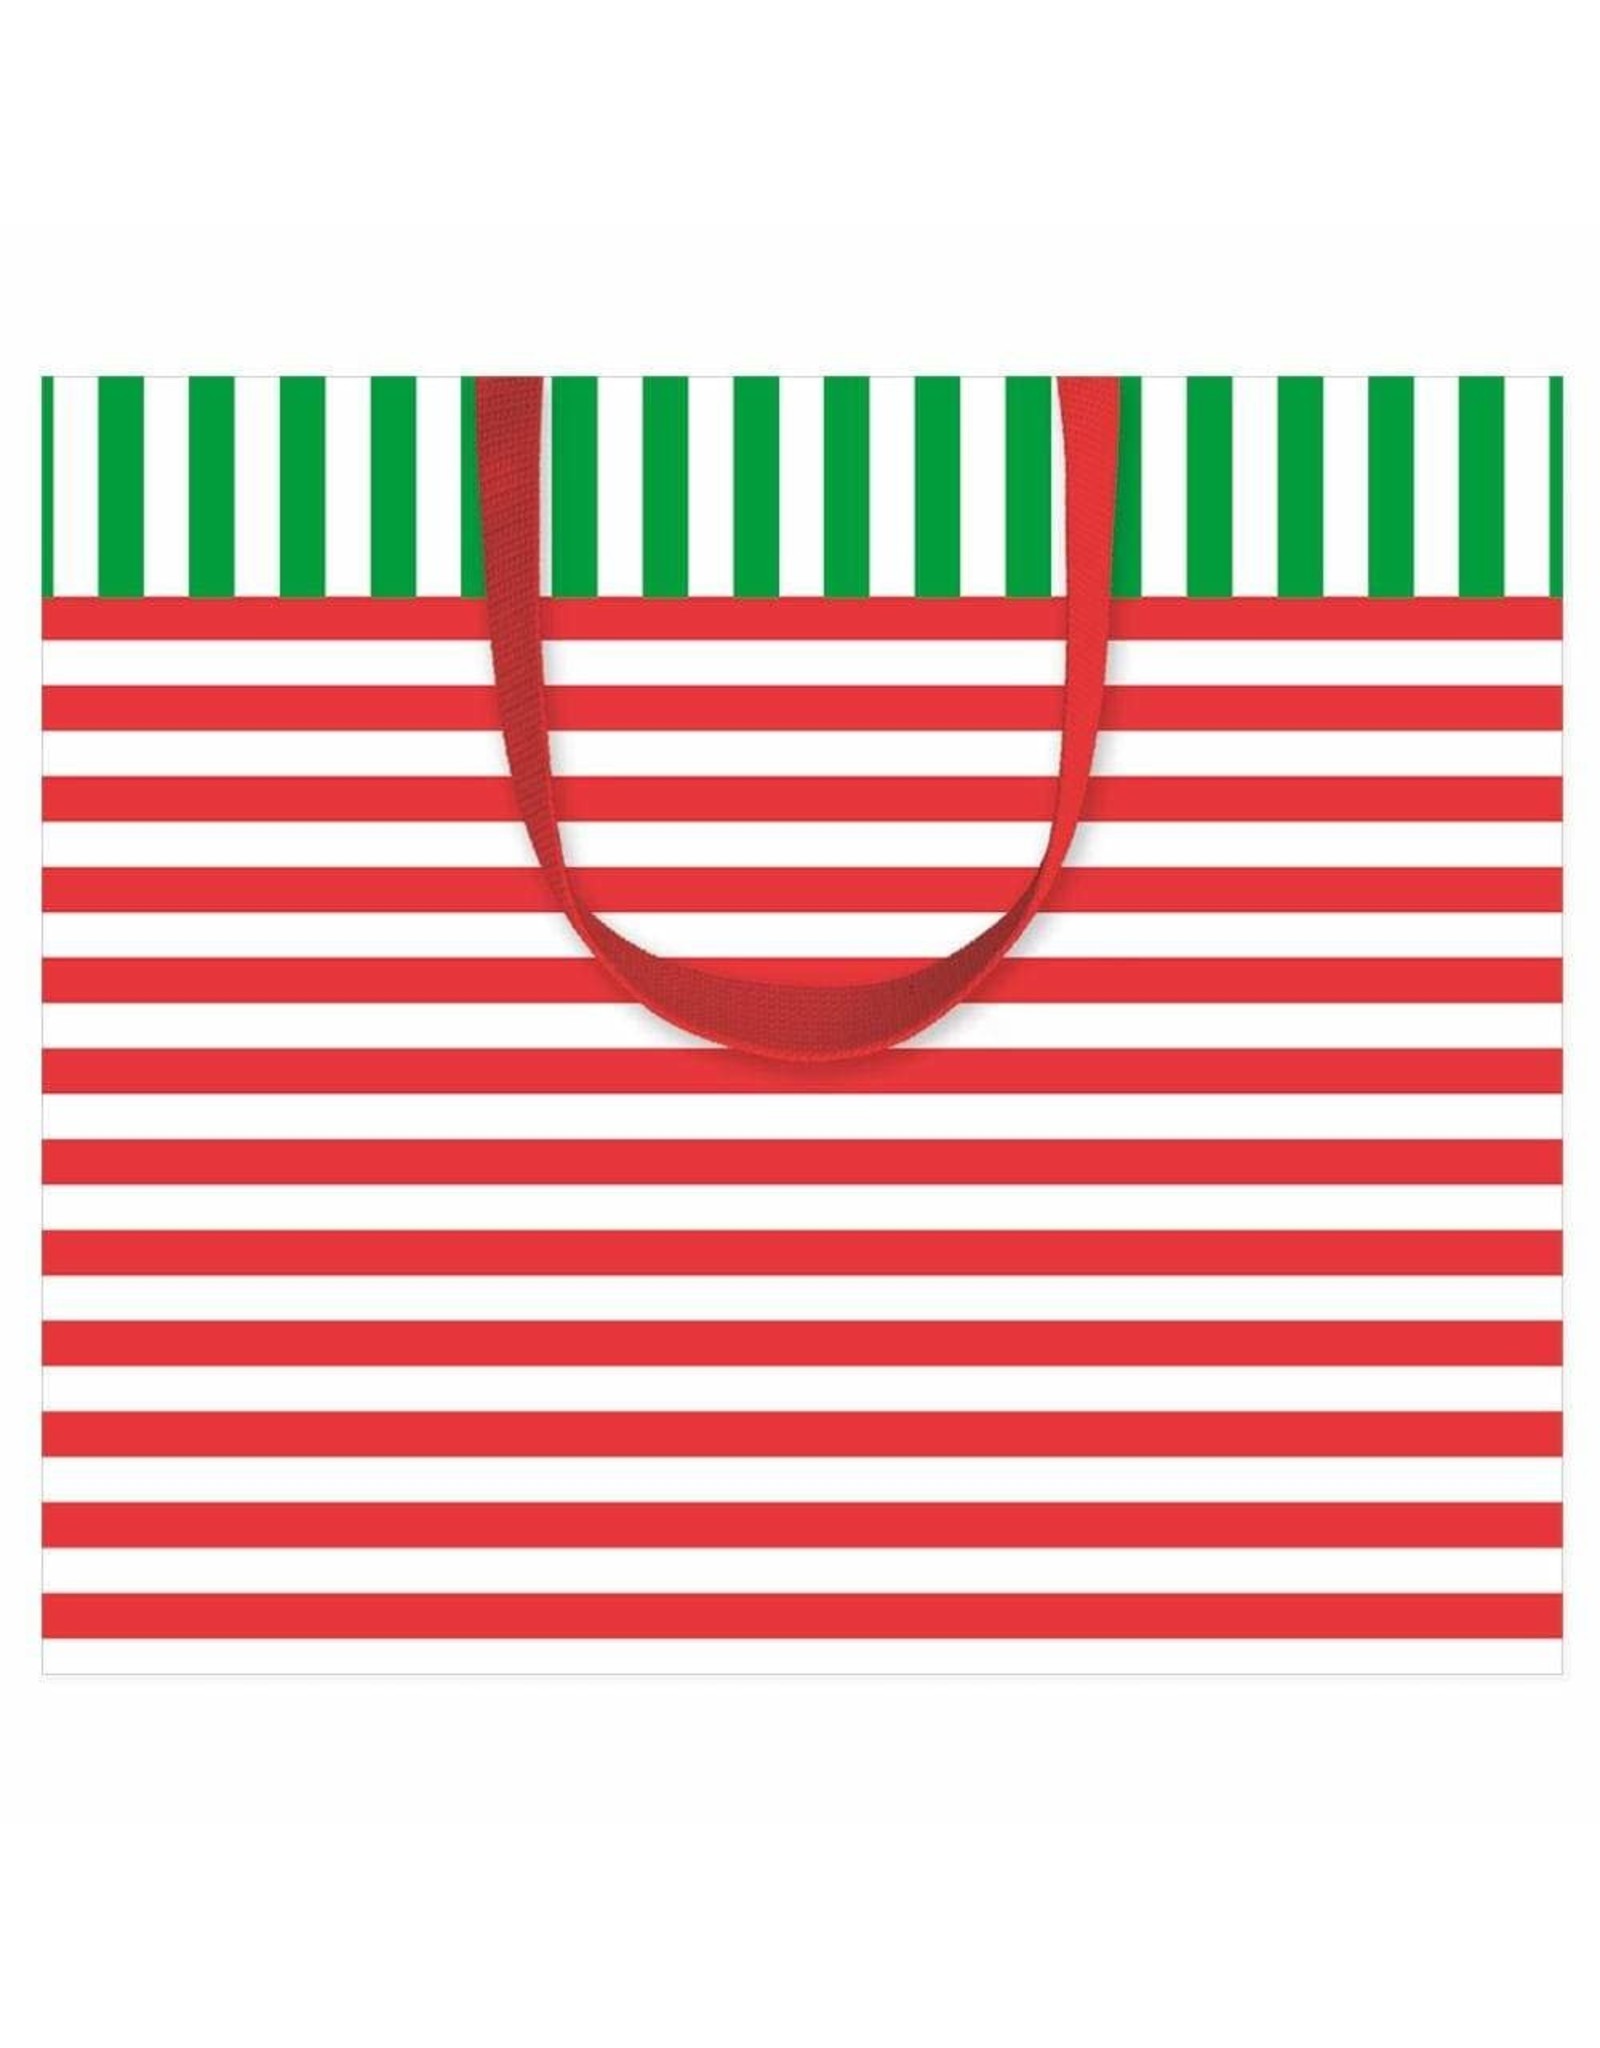 Caspari Christmas Gift Bag Large 11.75x4.75x10 Club Stripe